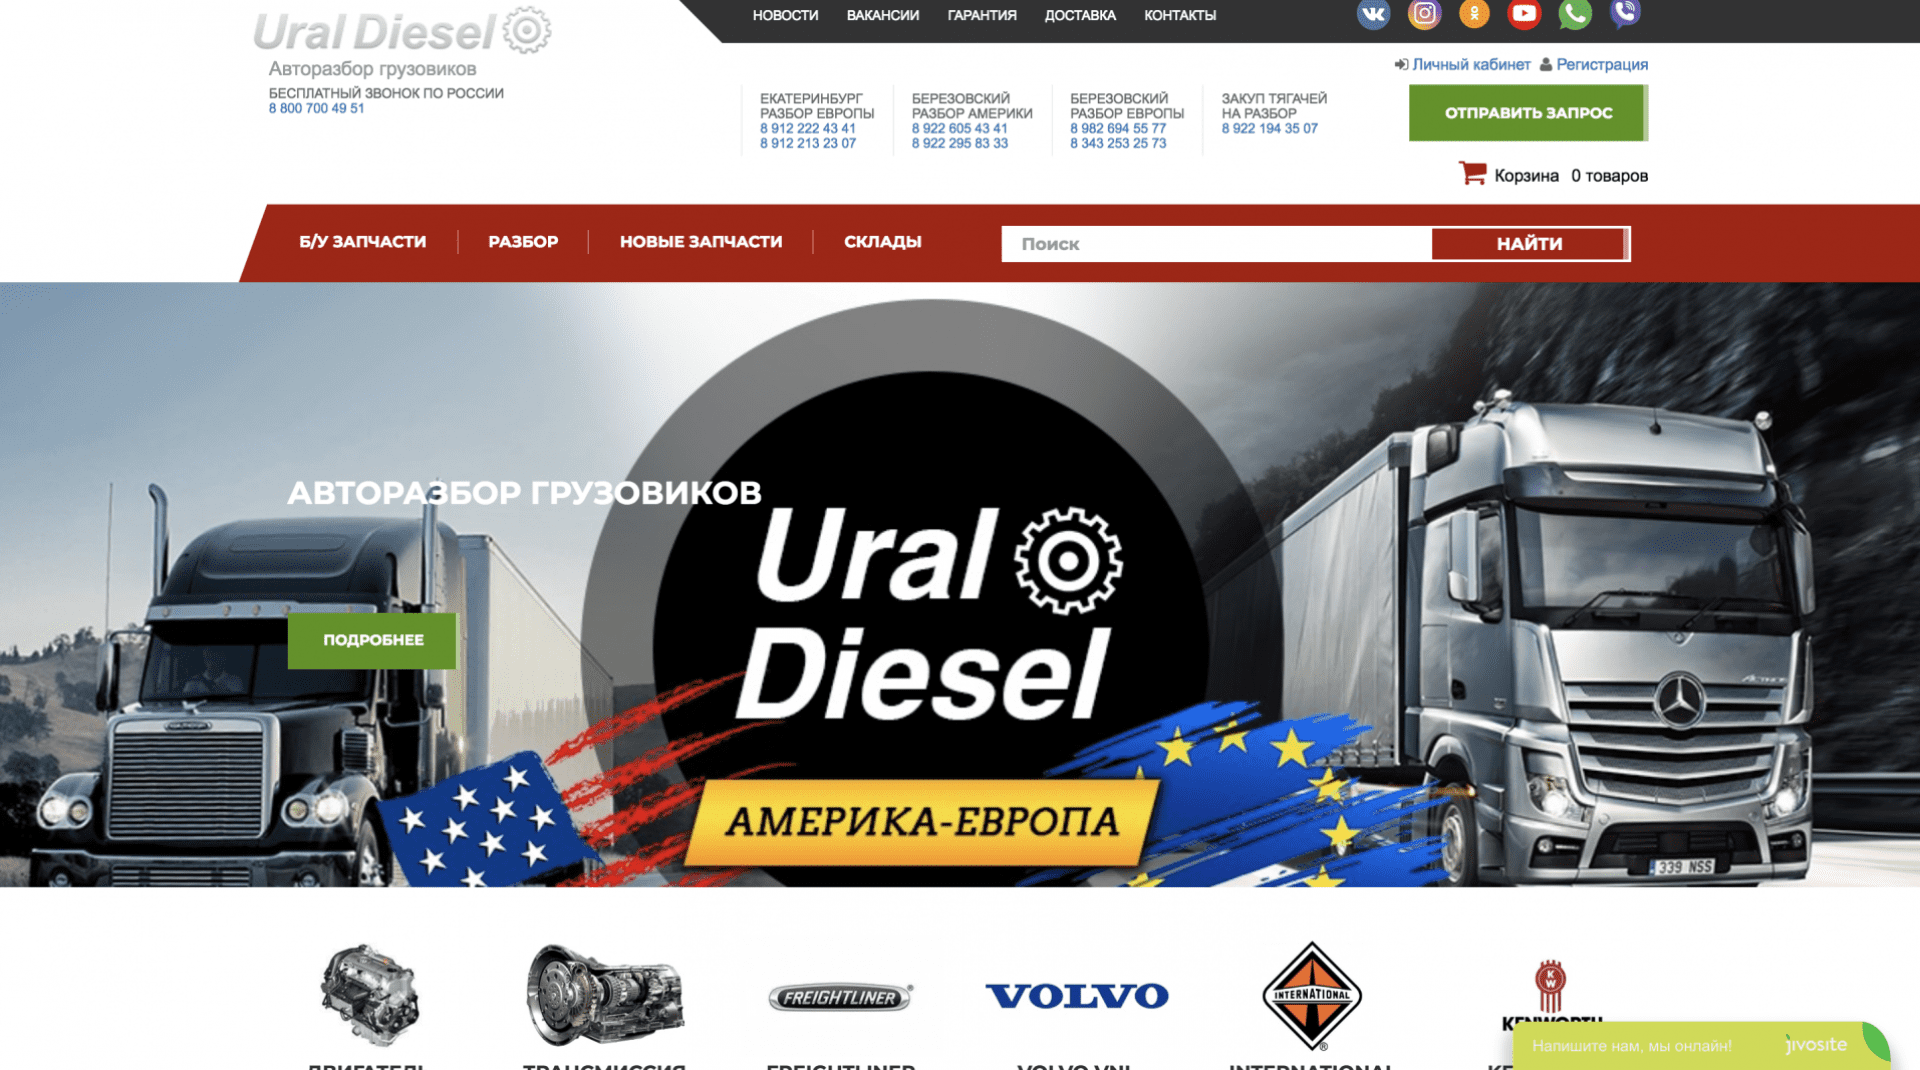 Ural Diesel